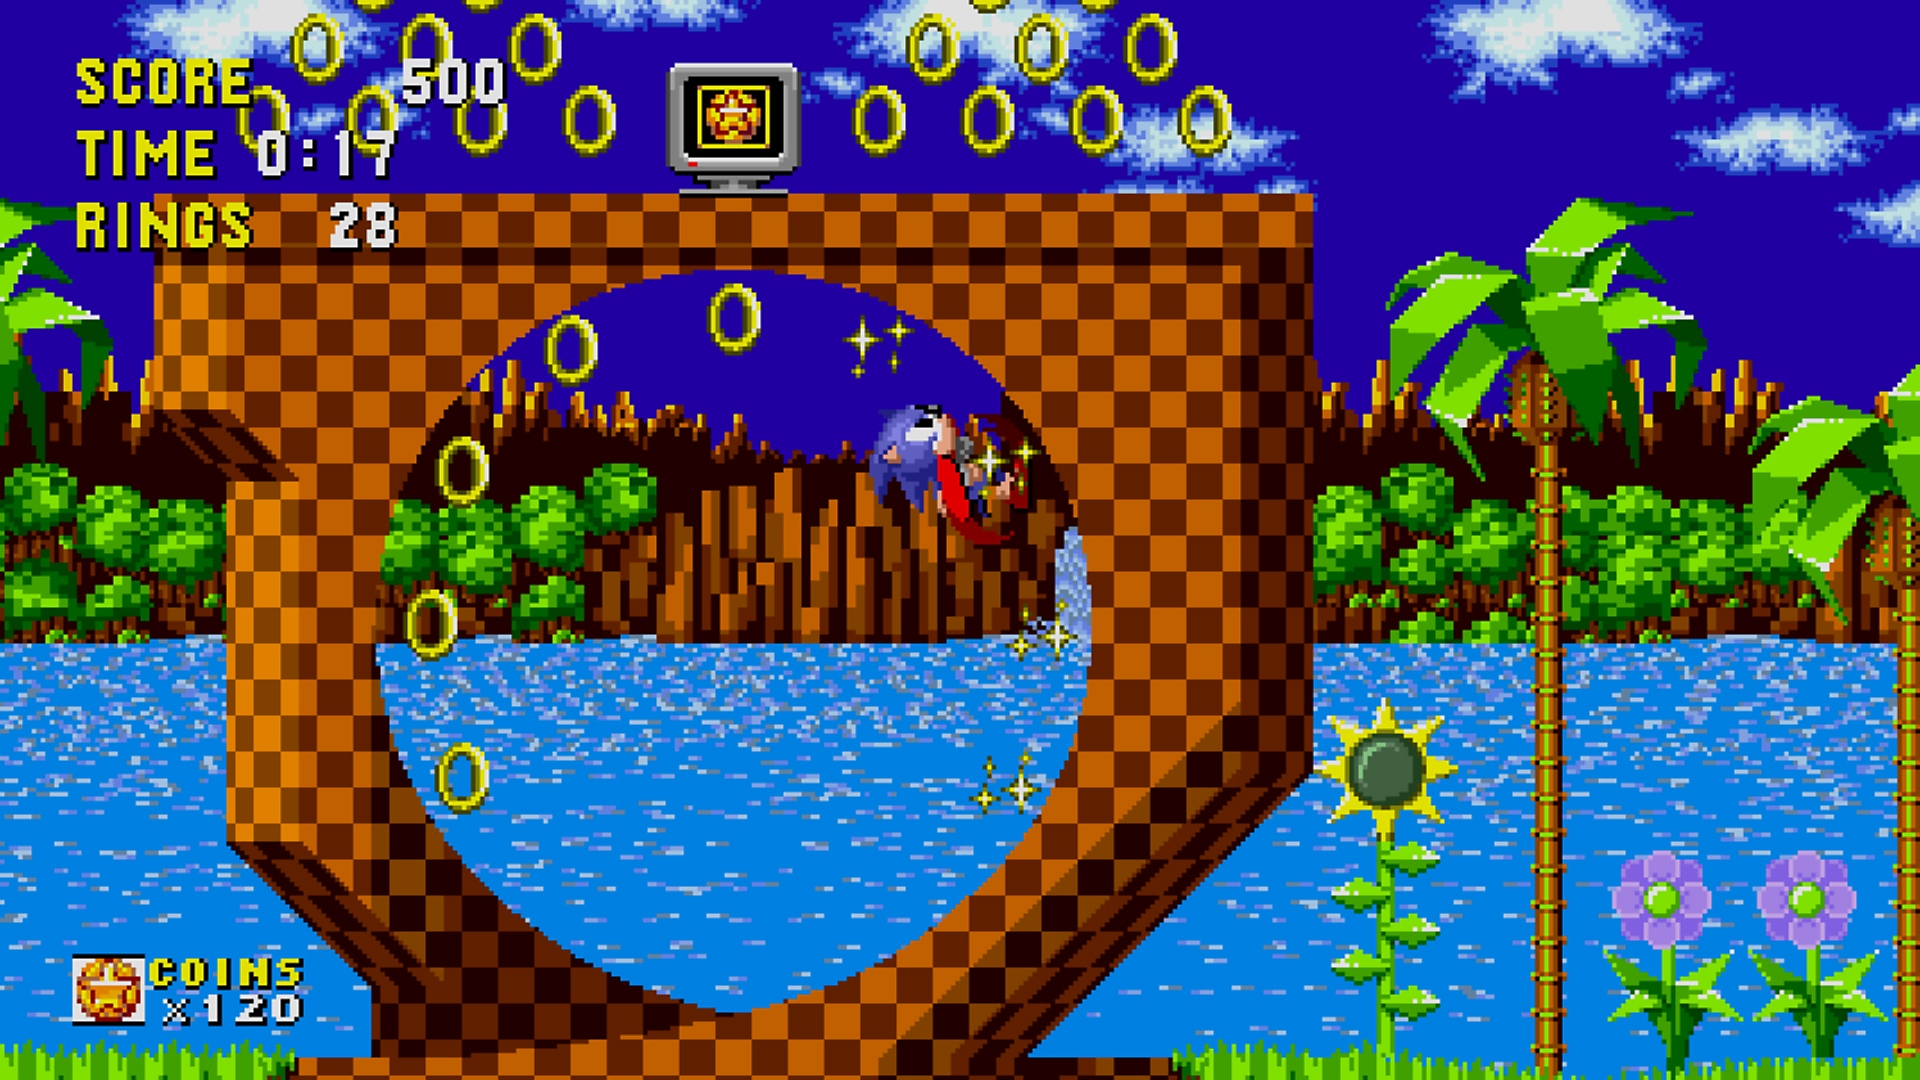 Captura de pantalla de Sonci Origins mostrando una imagen con relación de aspecto 16:9 al comienzo del nivel Green Hill Zone